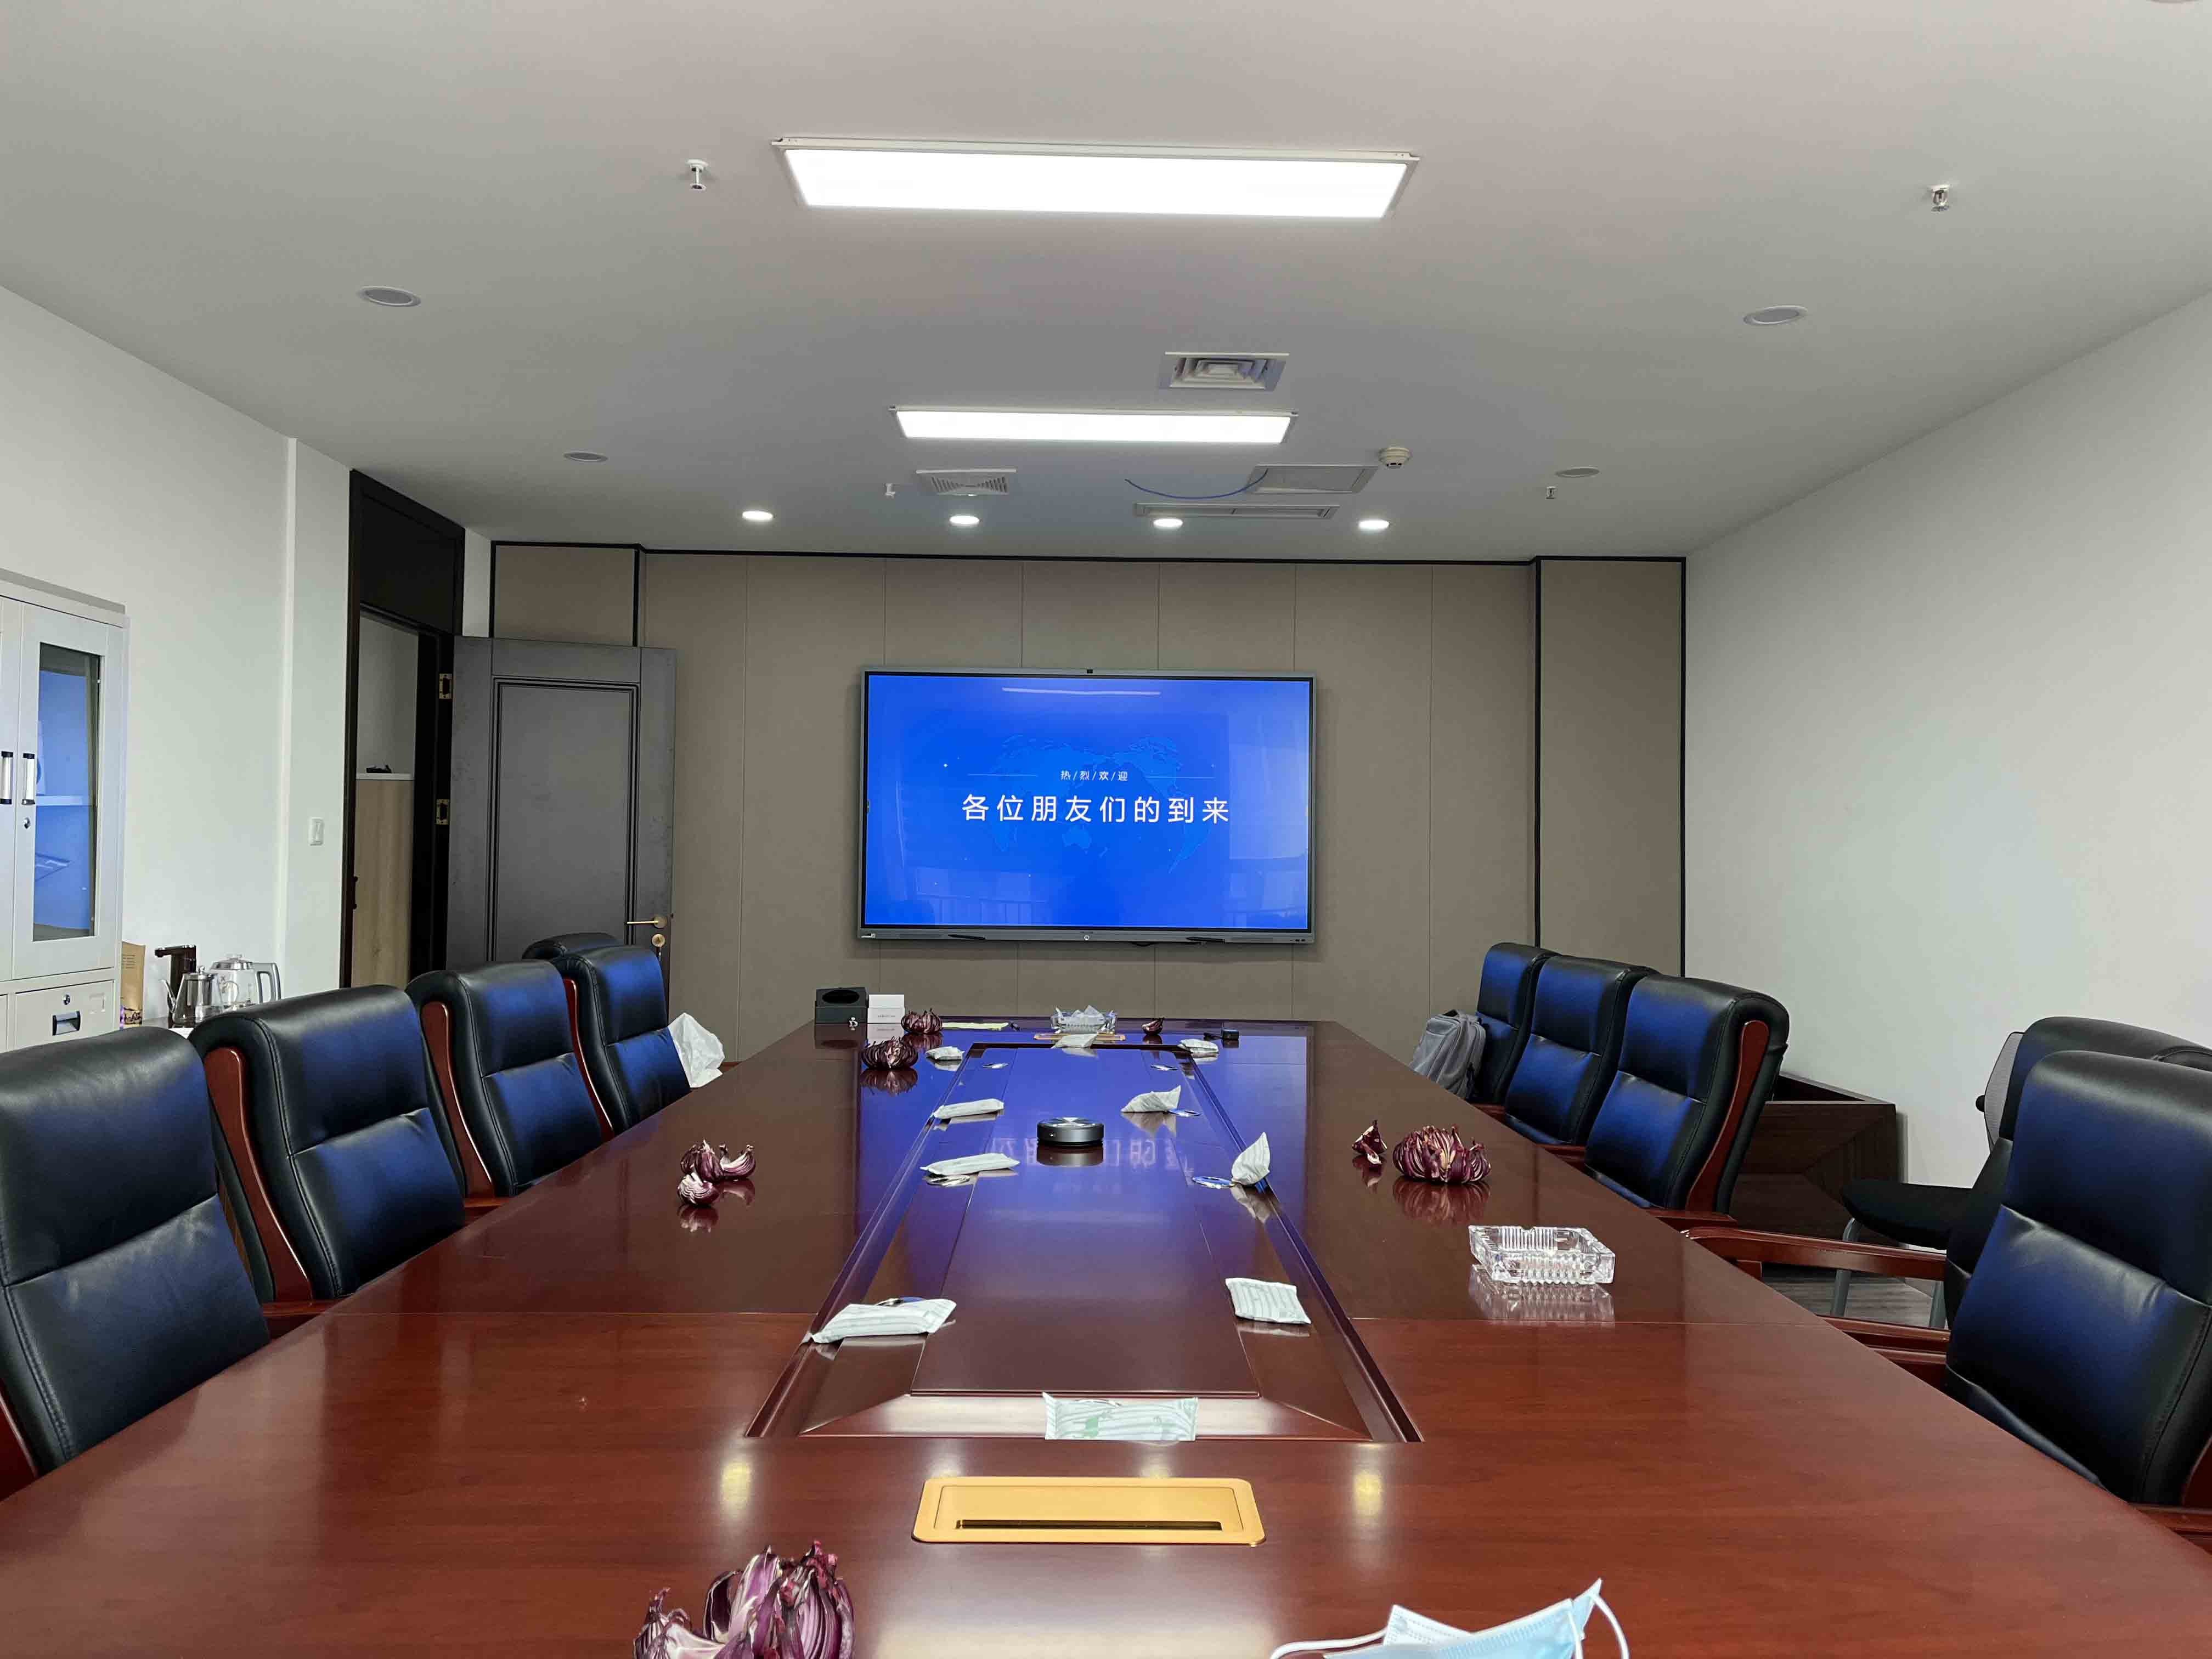 成都新艺人建设工程有限公司新装修会议室使用会议平板作为会议设备